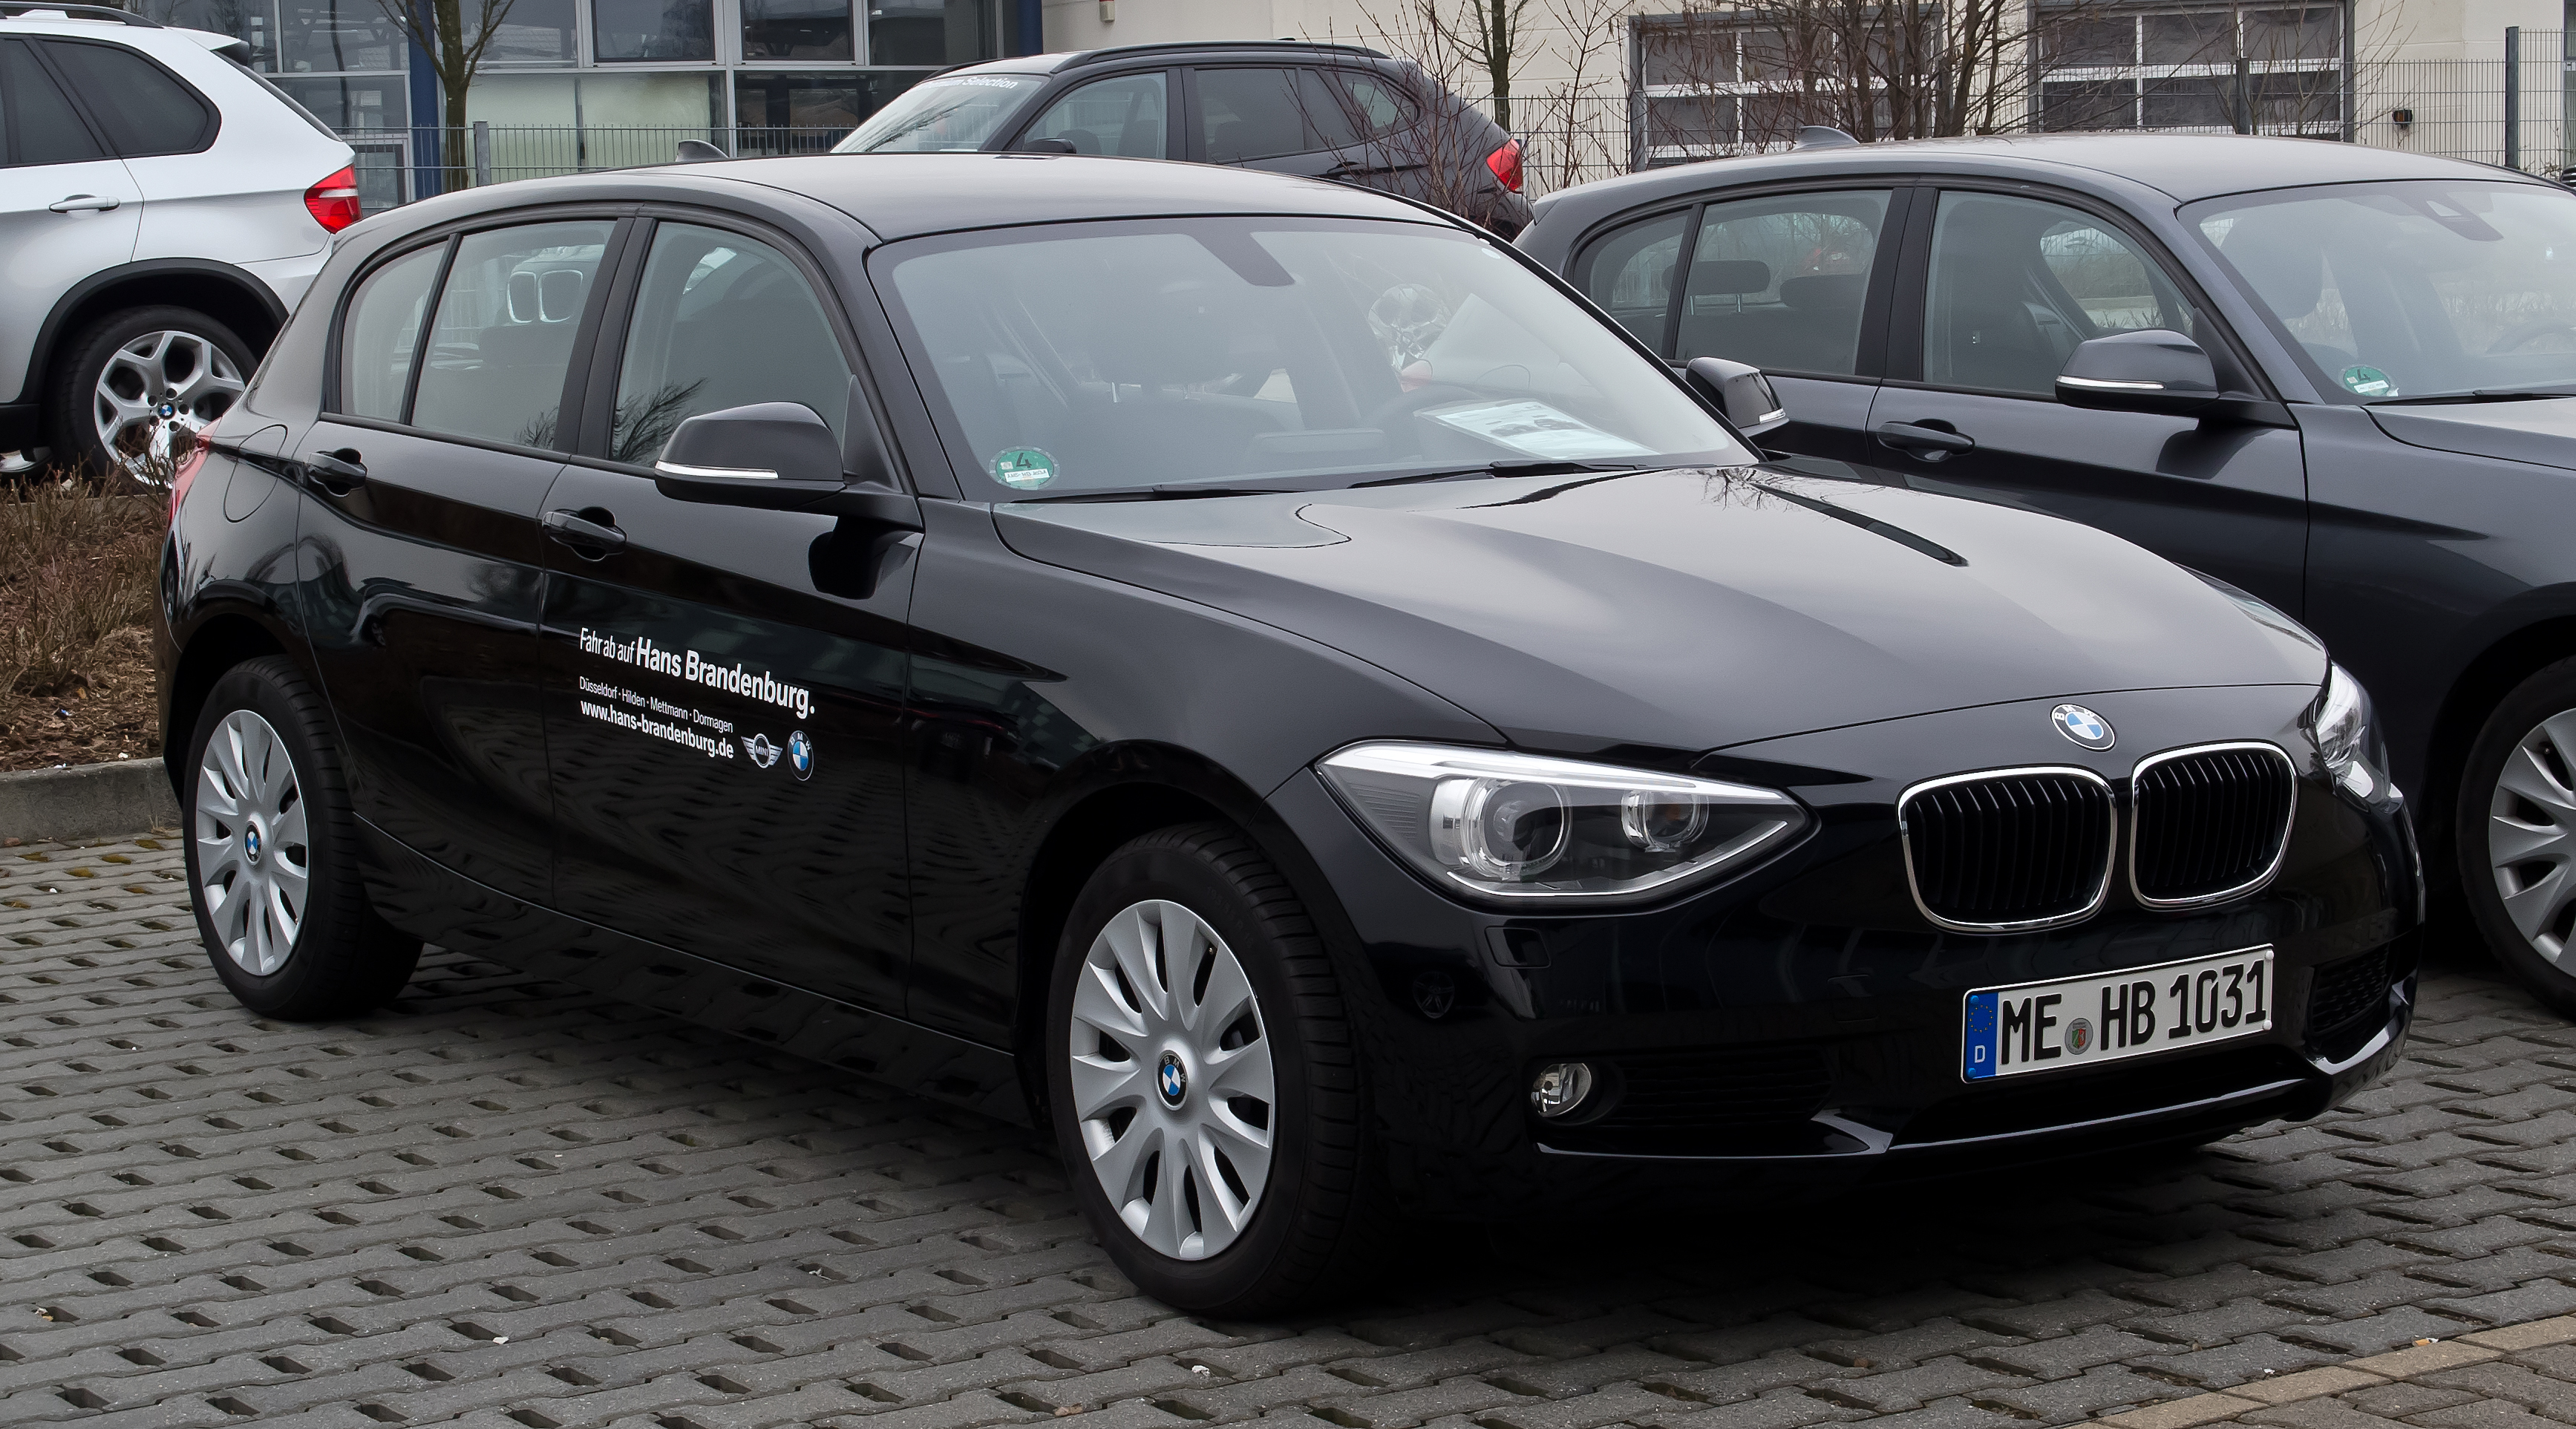 File:BMW 116i M-Sportpaket (F20) – Frontansicht, 24. Juni 2012